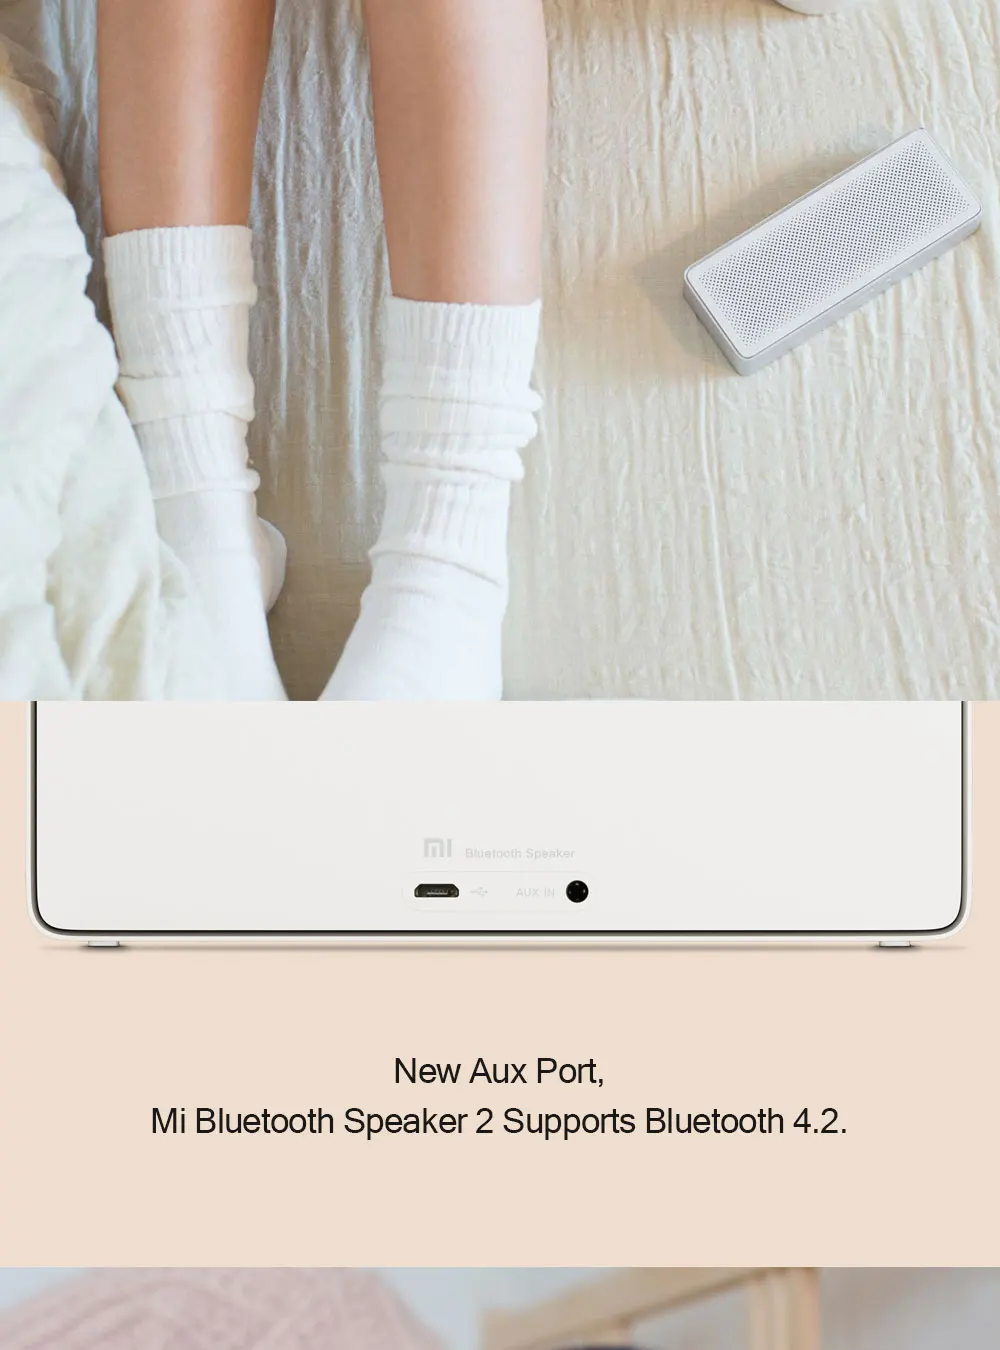 Xiaomi Mi квадратная коробка Bluetooth Динамик 2 стерео Портативный Динамик s Bluetooth 4,2 HD Высокое разрешение качество звука воспроизводить музыку MP3